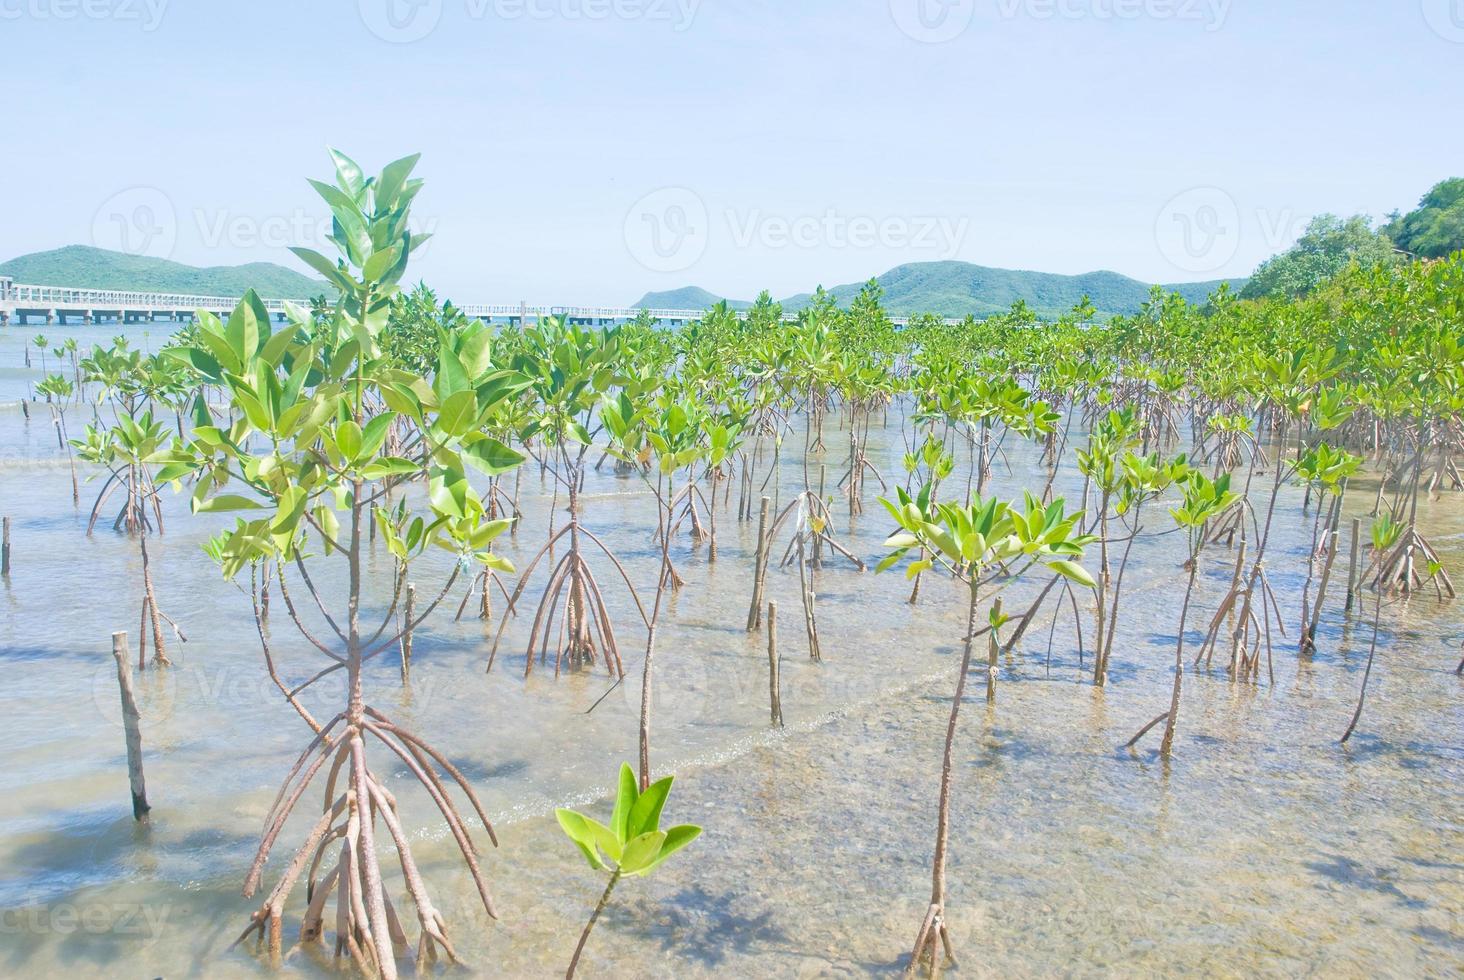 rimboschimento di mangrovie sulla spiaggia di fango foto